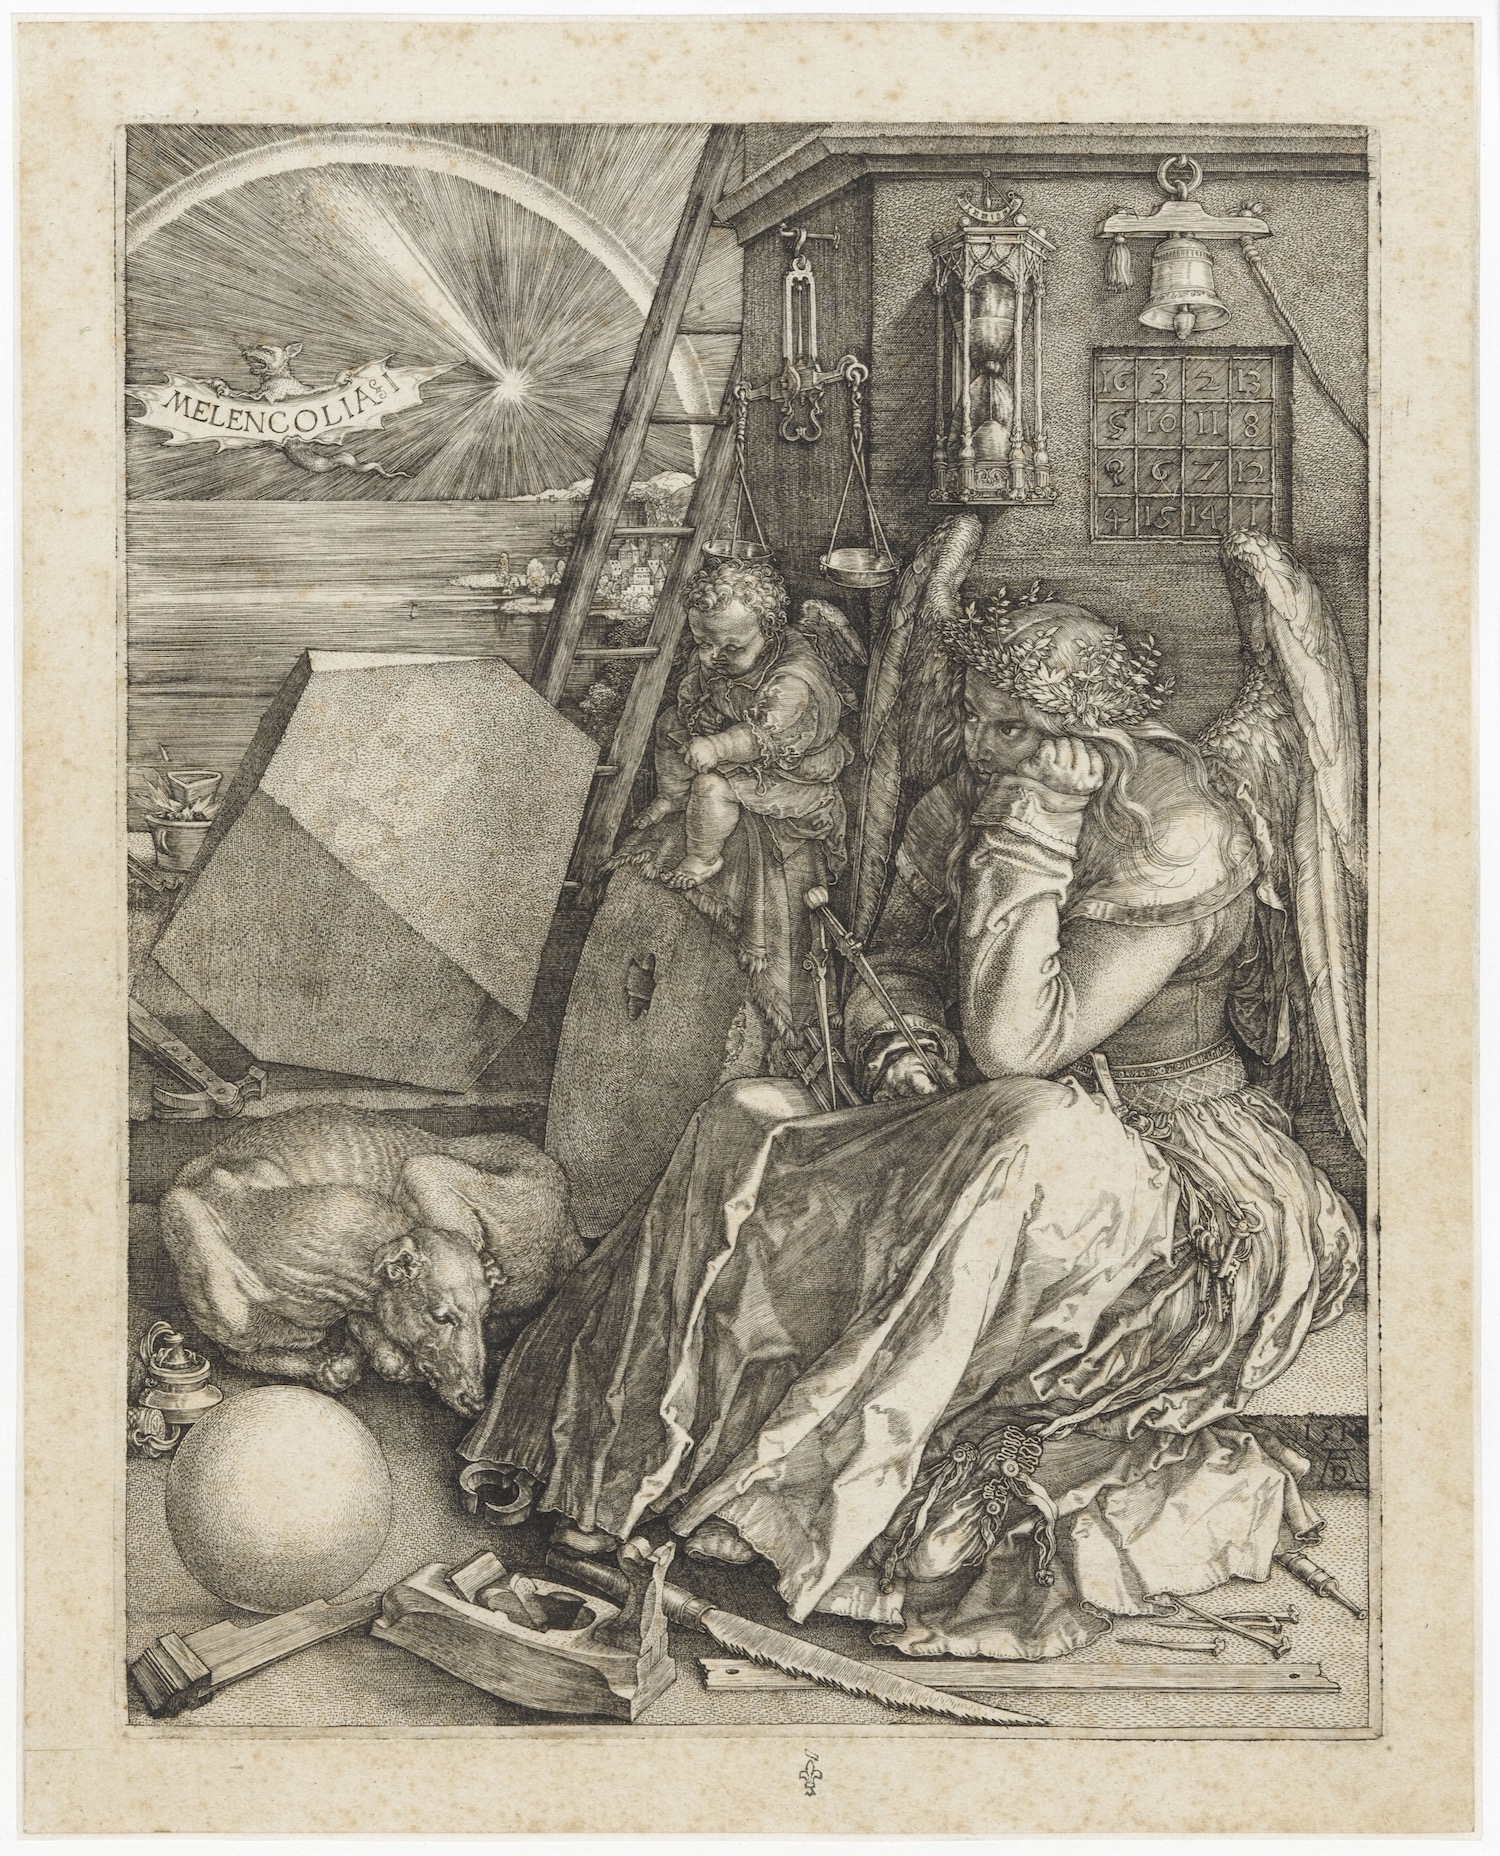 Albrecht Dürer (1471-1528), Melencolia I, 1514. Gravure sur cuivre au burin, 27 x 21,6 cm. Chantilly, musée Condé. Photo service de presse. © RMN-Grand Palais Domaine de Chantilly-René Gabriel Ojéda